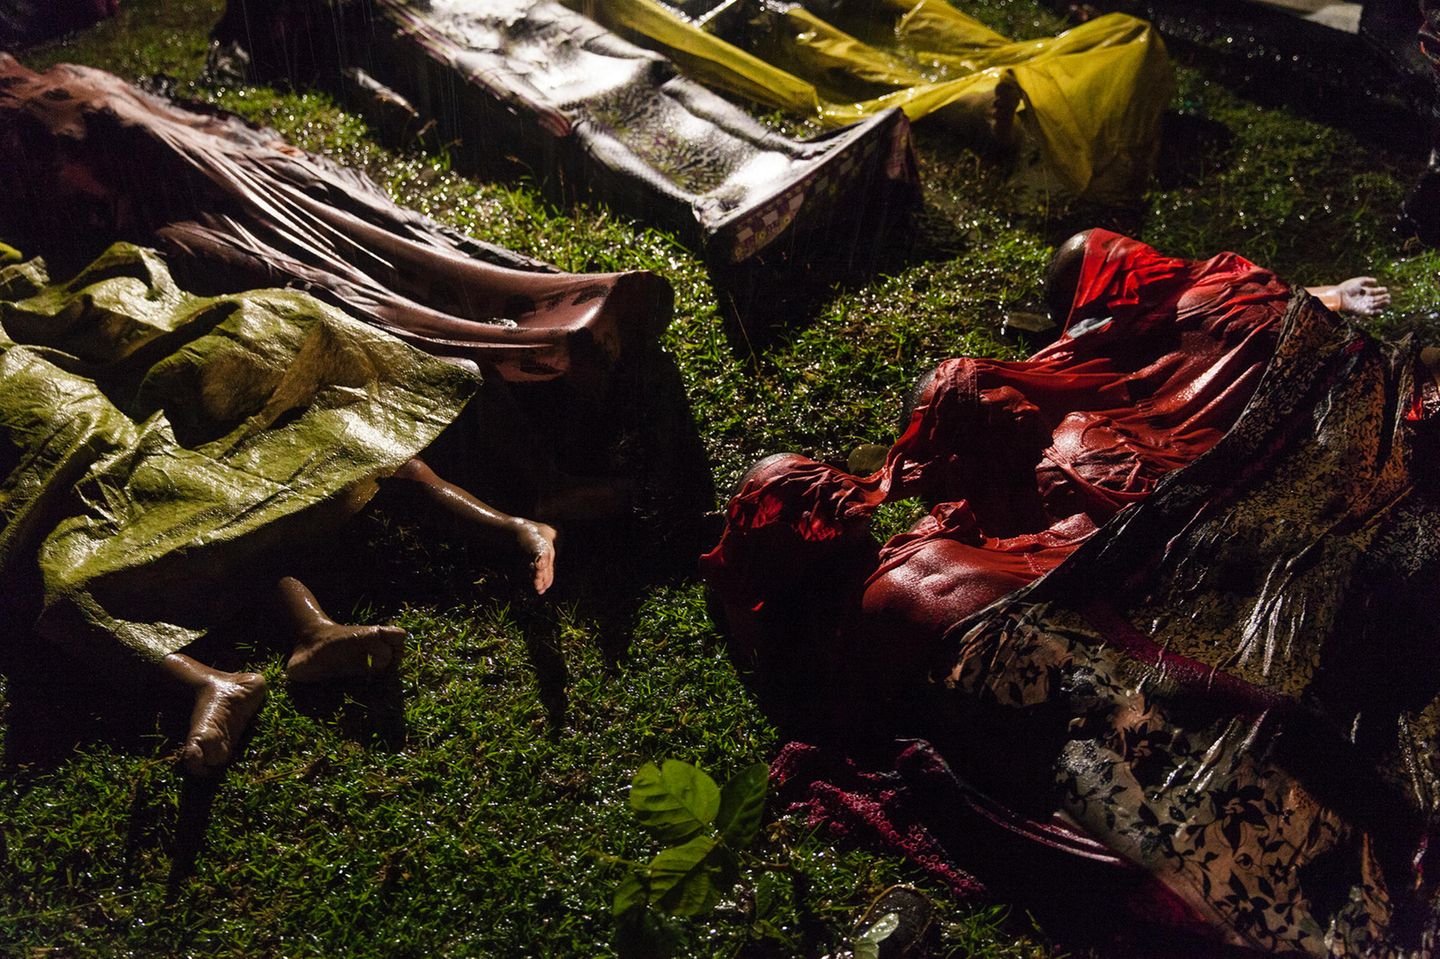 Fotograf: Patrick Brown     28. September 2017    1. Preis im Segment "Einzelfotos"  Ertrunkene Rohingya-Flüchtlinge werden niedergelegt. Das Boot, in dem sie aus Myanmar zu flüchten versuchten, kenterte ungefähr acht Kilometer vor Inani Beach, bei Cox's Bazar, Bangladesch. Es waren rund 100 Menschen an Bord, nur 17 überlebten.    Die Rohingya sind eine vorwiegend muslimische Minderheit von schätzungsweise einer Million Menschen im Bundesstaat Rakhine im Westen Myanmars. Durch in den 80er-Jahren erlassene Gesetze verloren sie den Anspruch auf die myanmarische Staatsbürgerschaft. Am 25. August kam es in Myanmar zu Gewaltausbrüchen, nachdem militante Rohingya bei Überfällen auf Polizeistationen 12 Sicherheitskräfte getötet hatten. Daraufhin griffen die Behörden von Myanmar, mancherorts mit Unterstützung buddhistischer Gruppen, Rohingya-Dörfer an und brannten Häuser nieder. Nach UNHCR-Angaben hatte die Anzahl der daraufhin nach Bangladesch geflüchteten Rohingya am 28. September 500.000 erreicht.